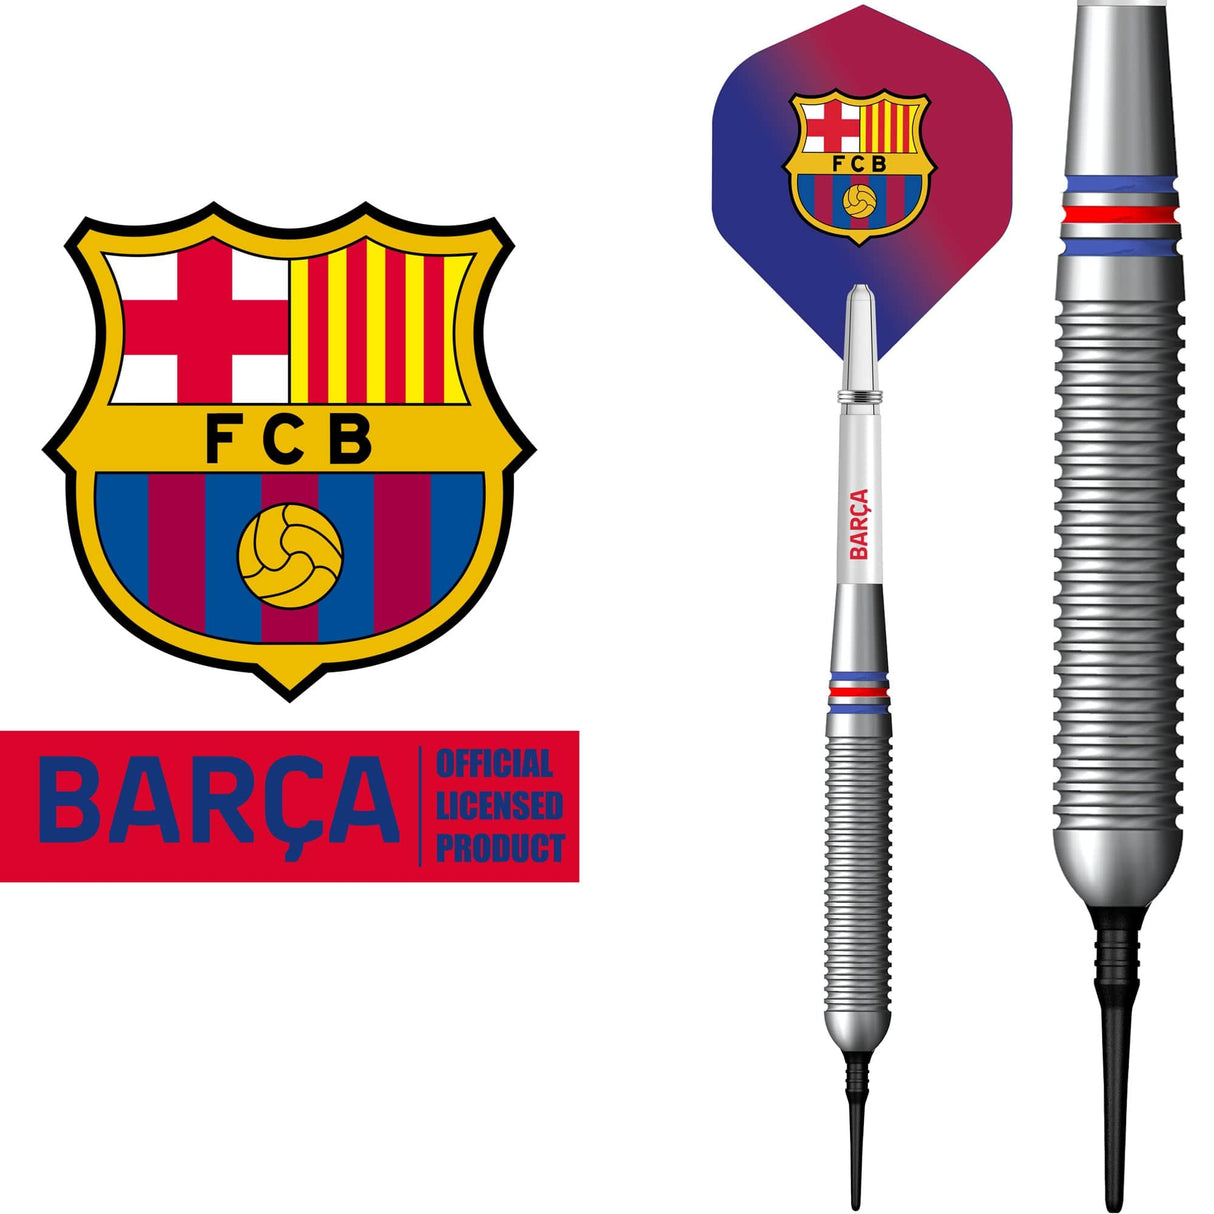 FC Barcelona - Official Licensed - Soft Tip Darts - Brass - BARÇA - 18g 18g